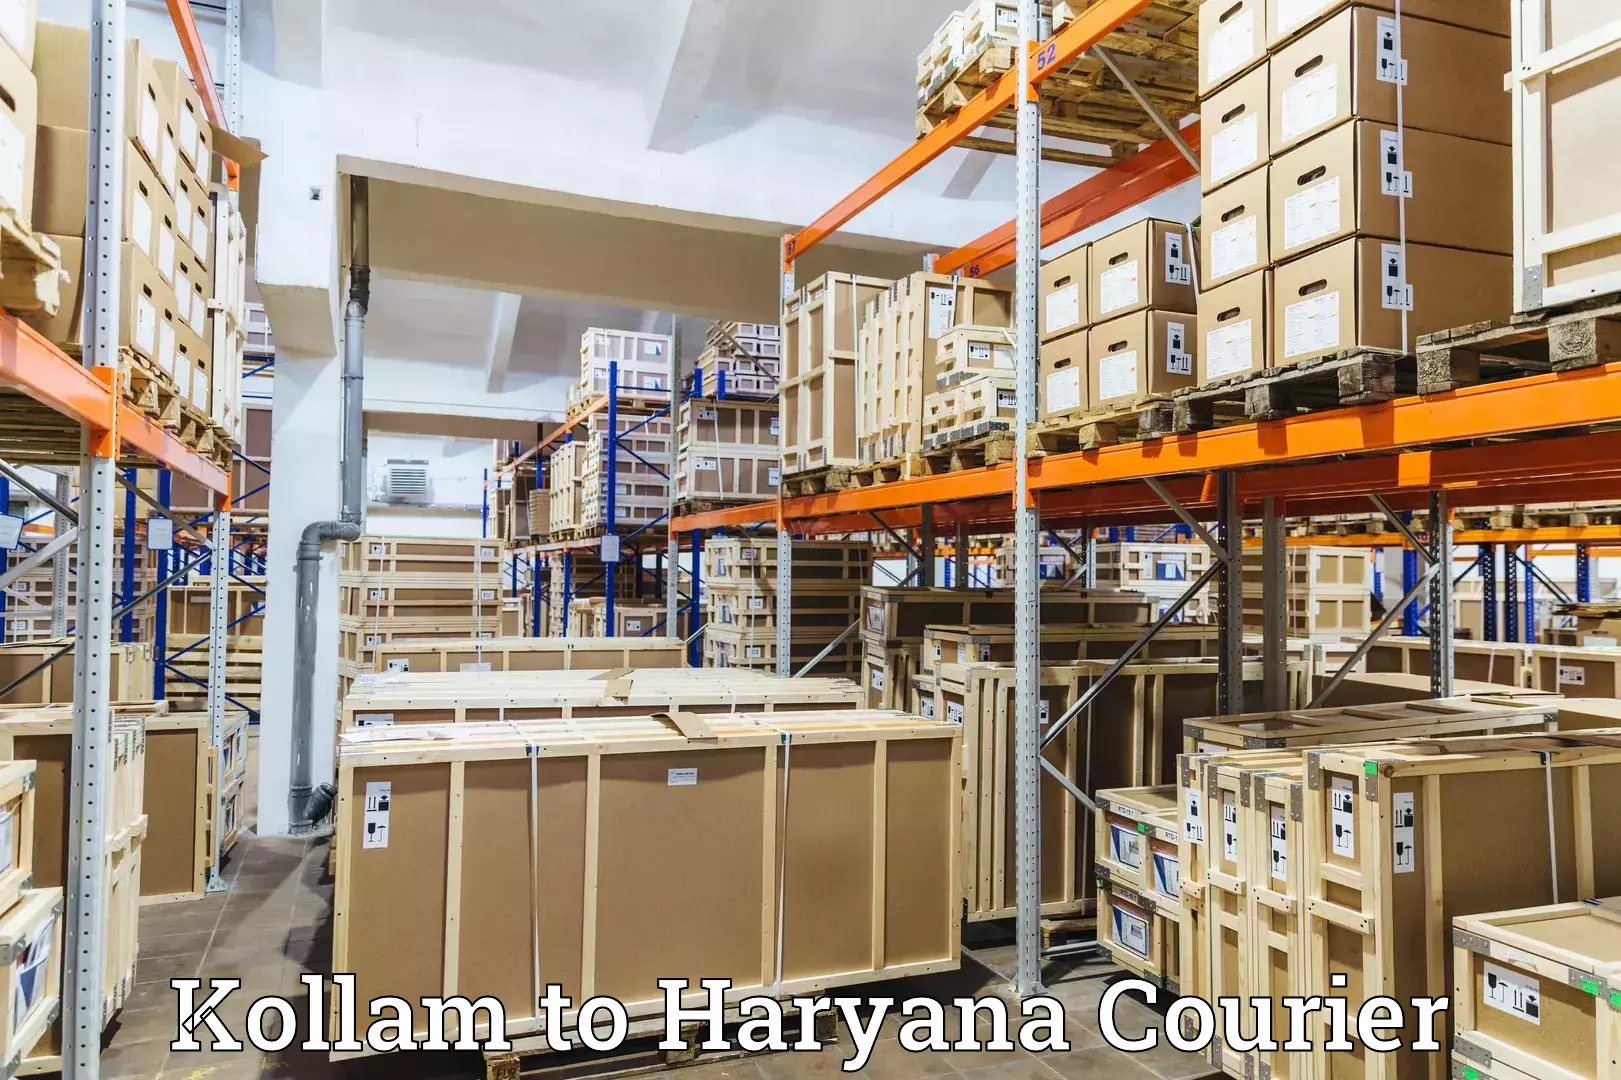 Customer-centric shipping Kollam to Narwana